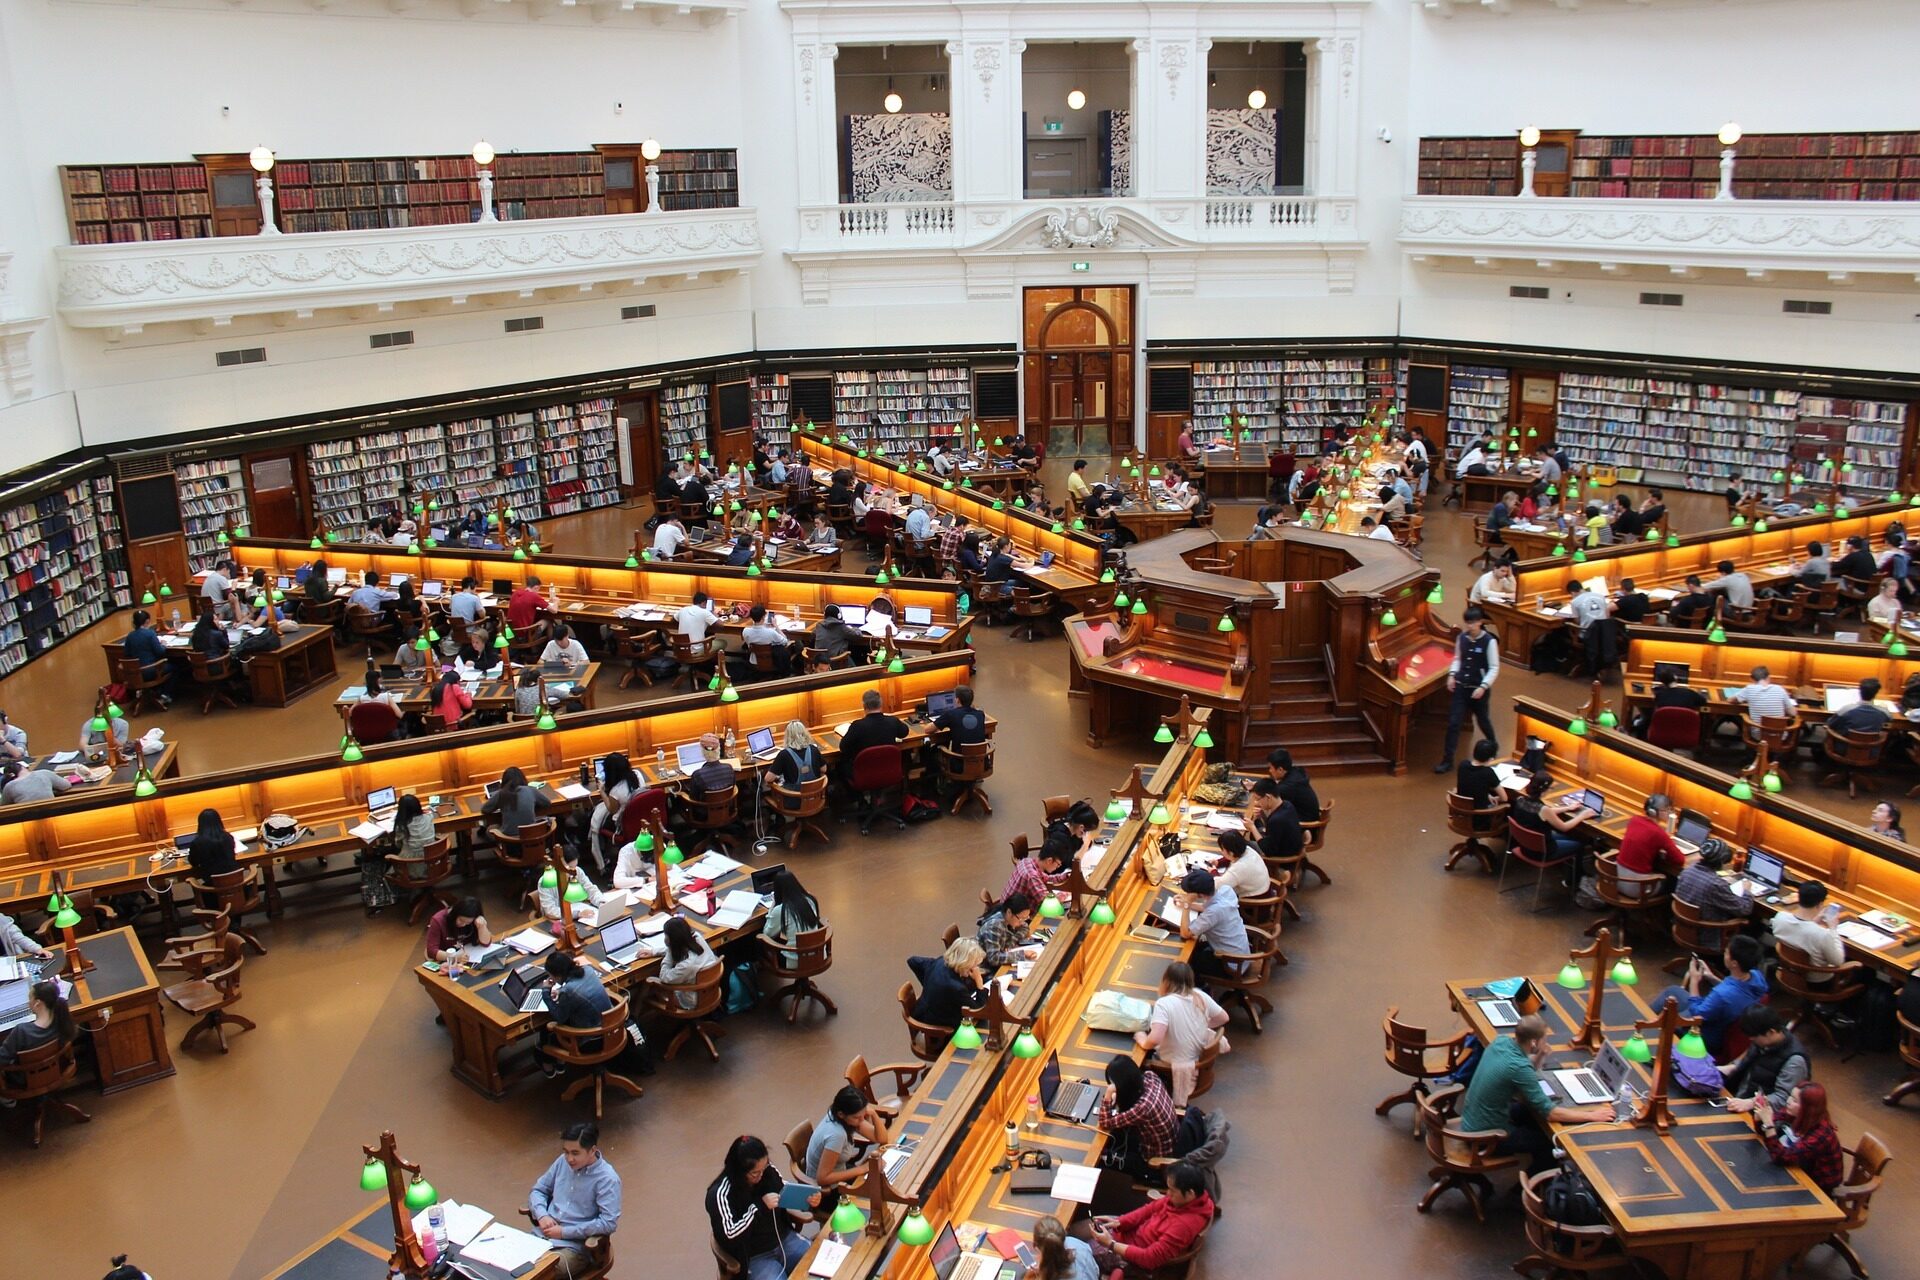 Abbildung einer Universitätsbibliothek